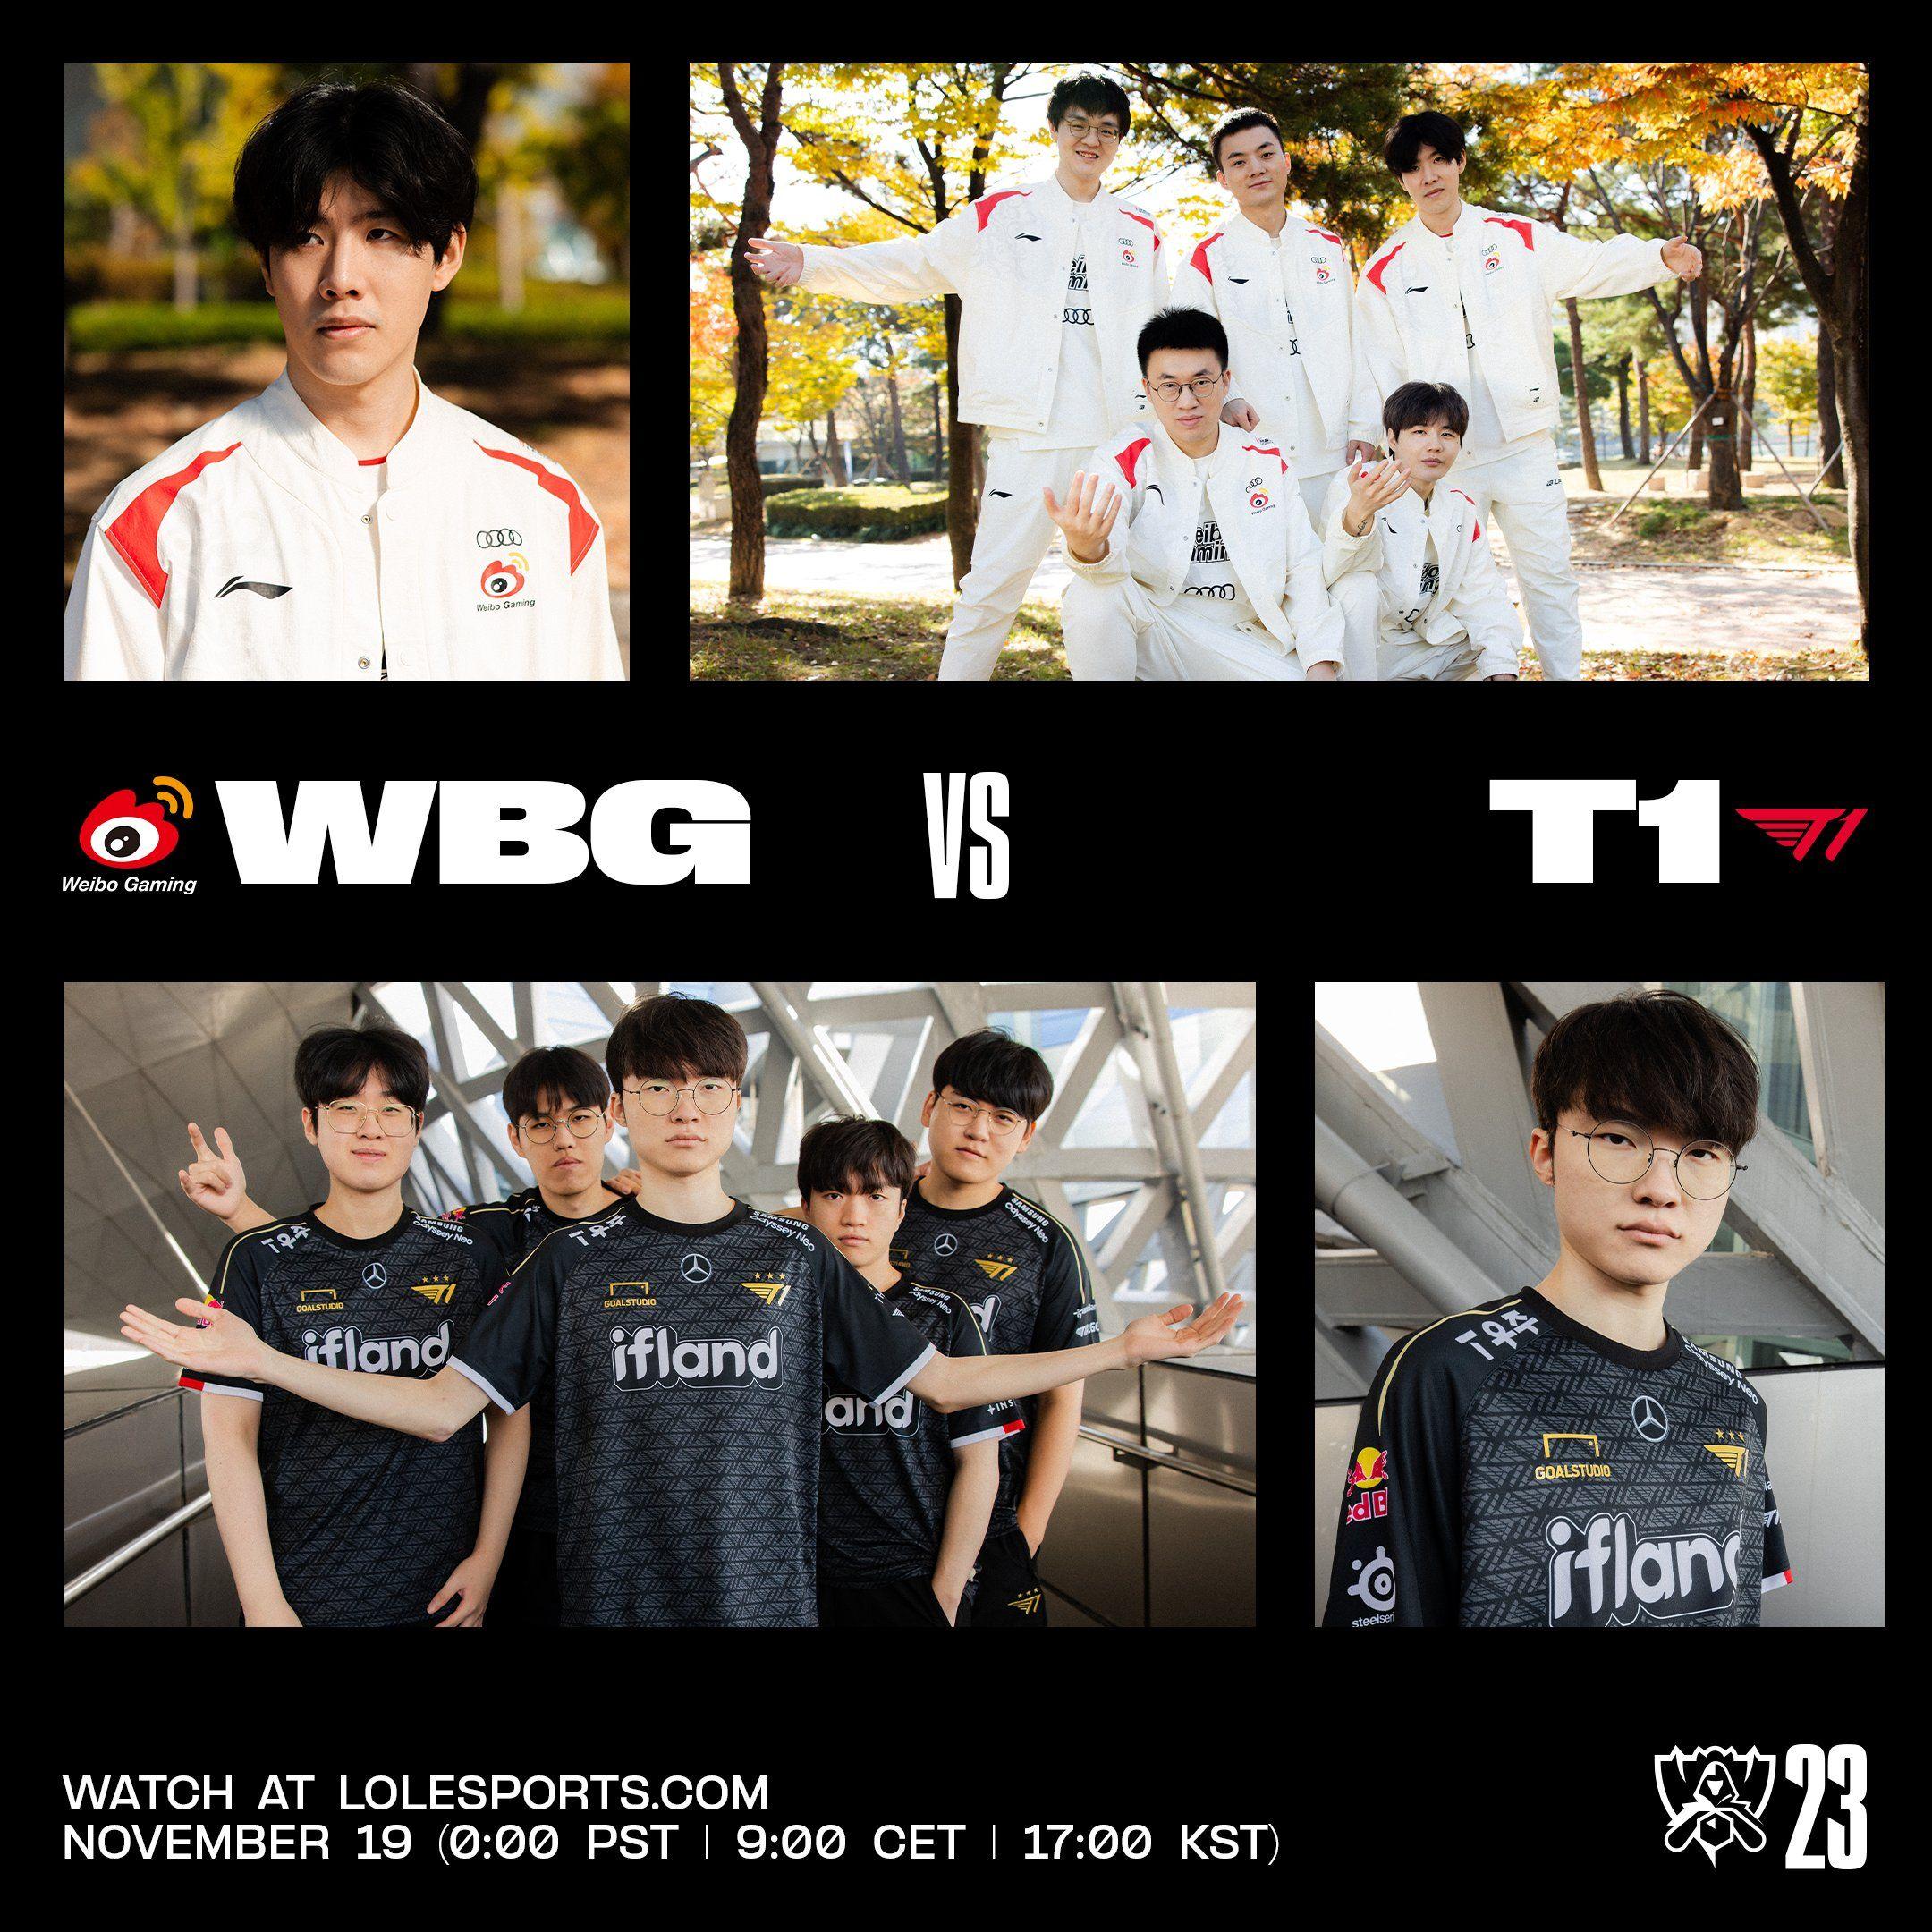 El partido T1 - Weibo Gaming es el principal acontecimiento de los deportes electrónicos. Encontramos 4 razones por las que esto es así